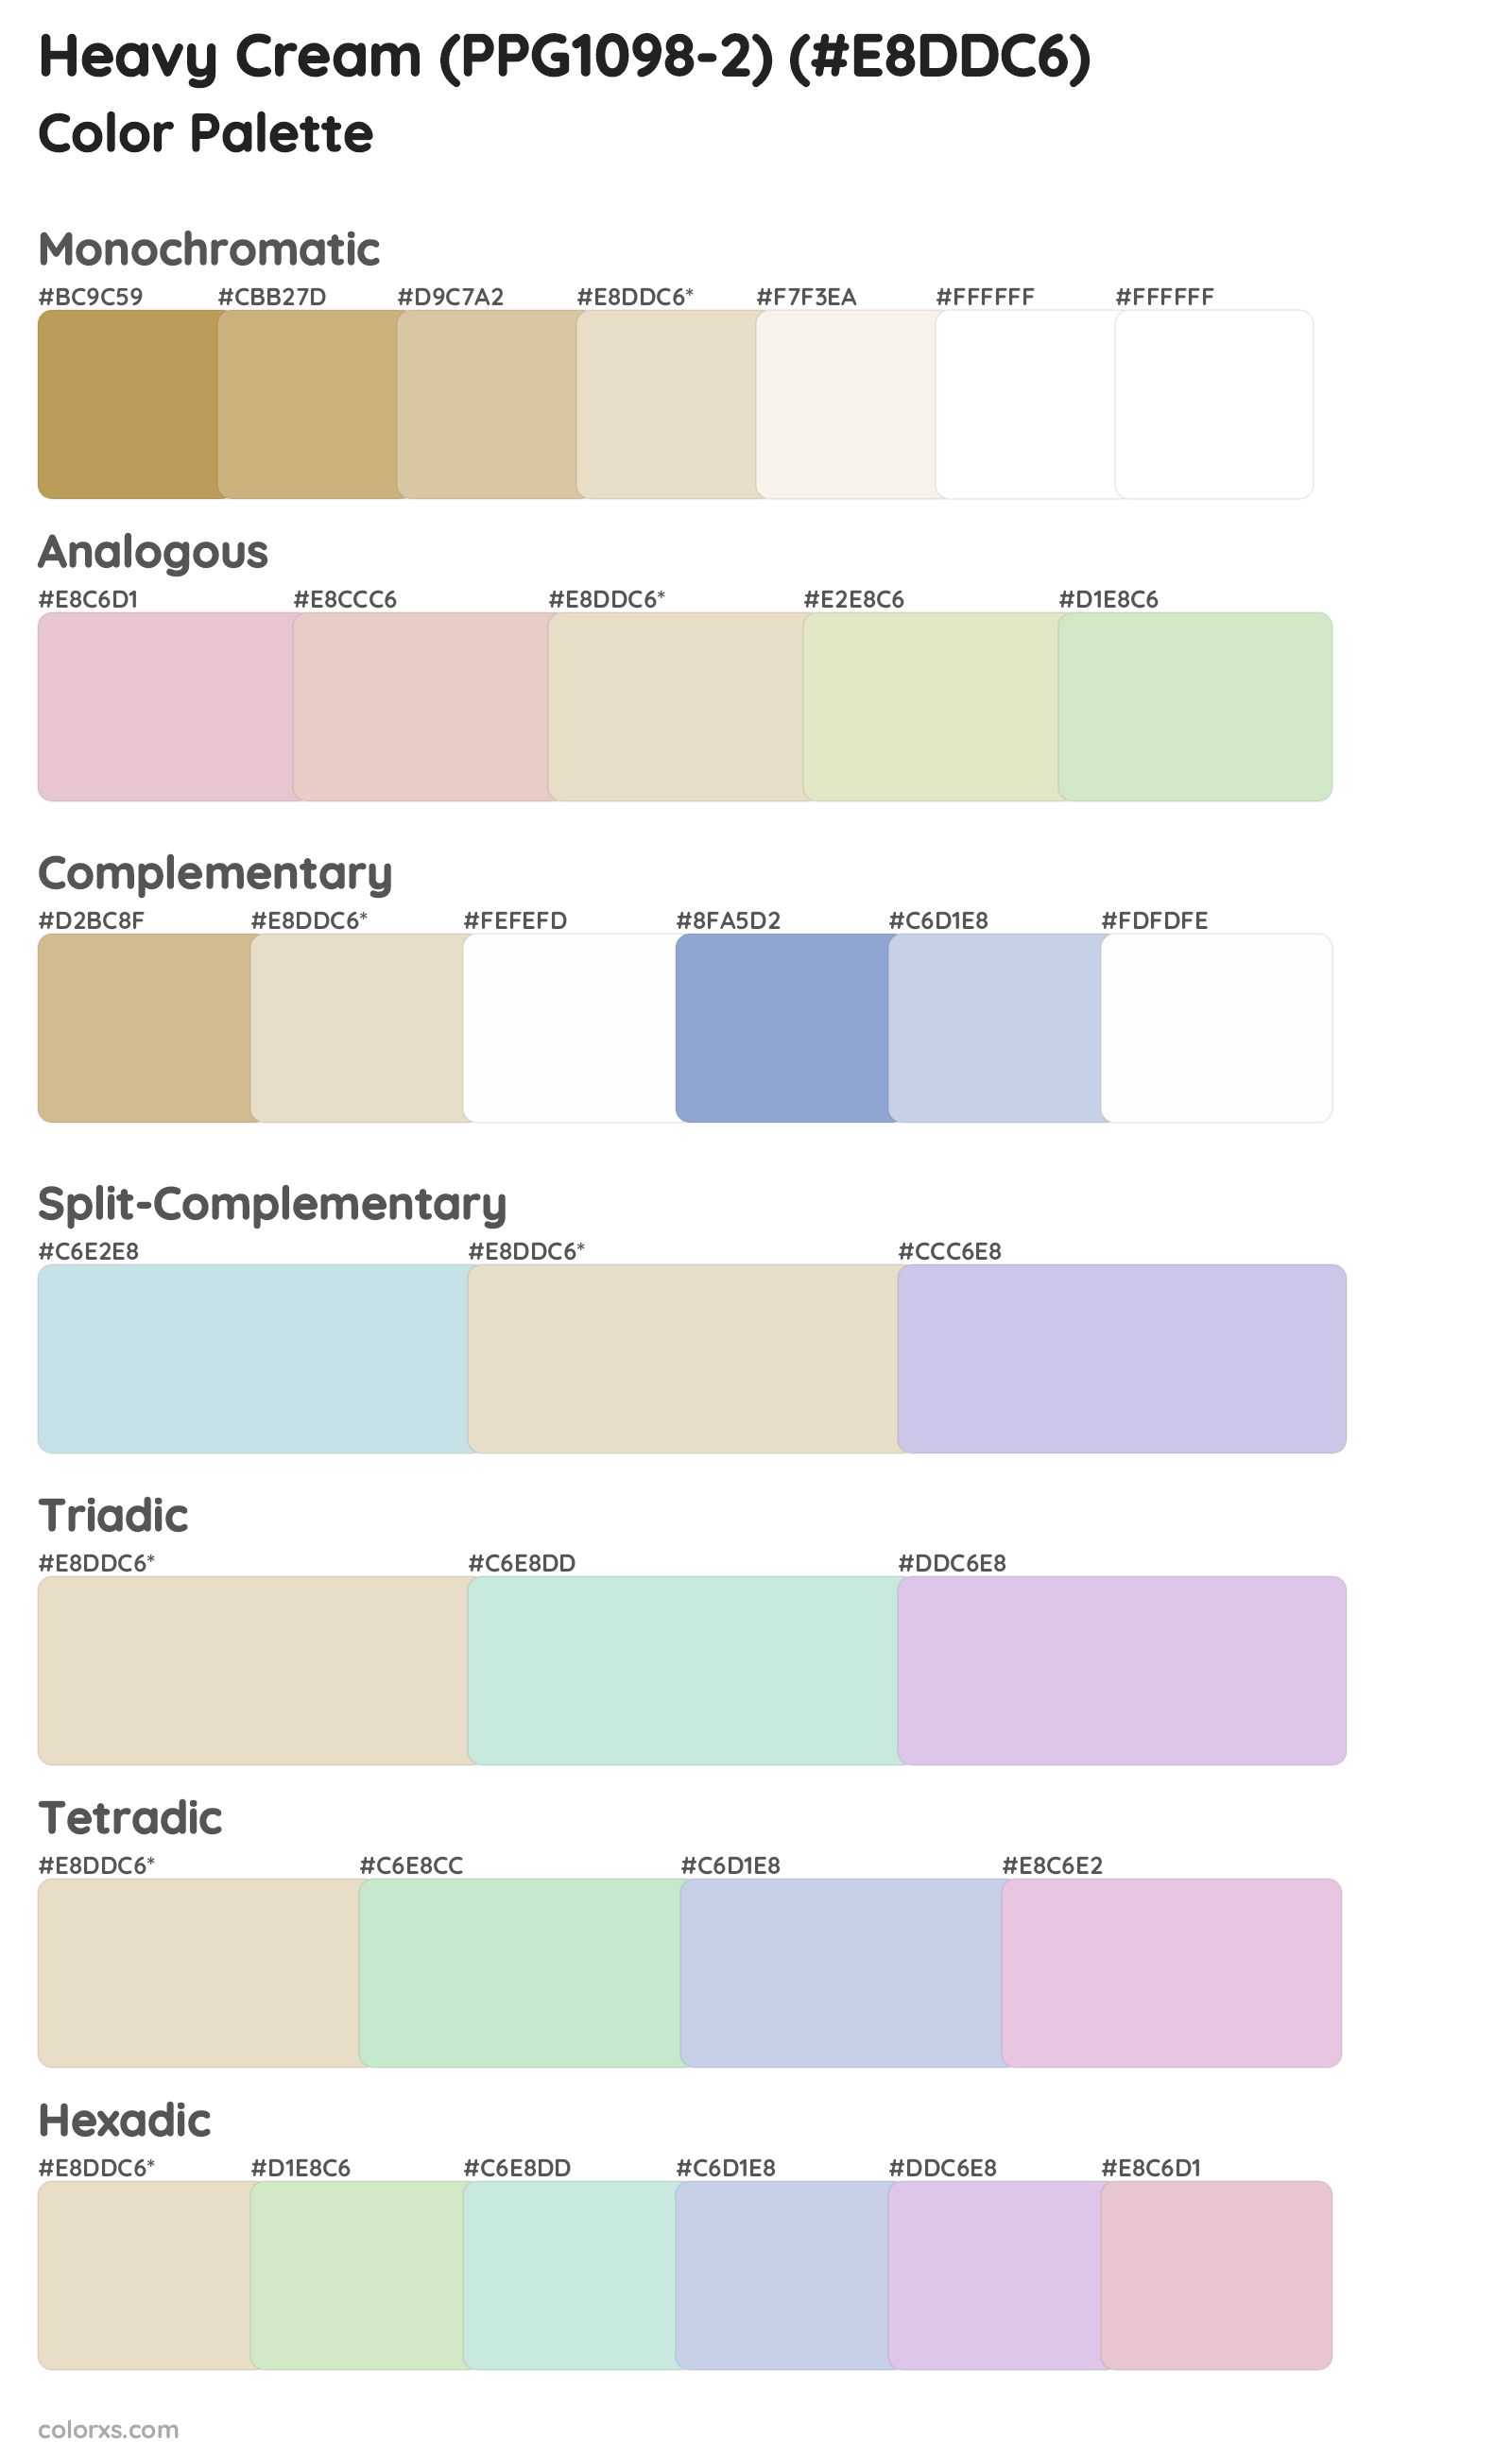 Heavy Cream (PPG1098-2) Color Scheme Palettes